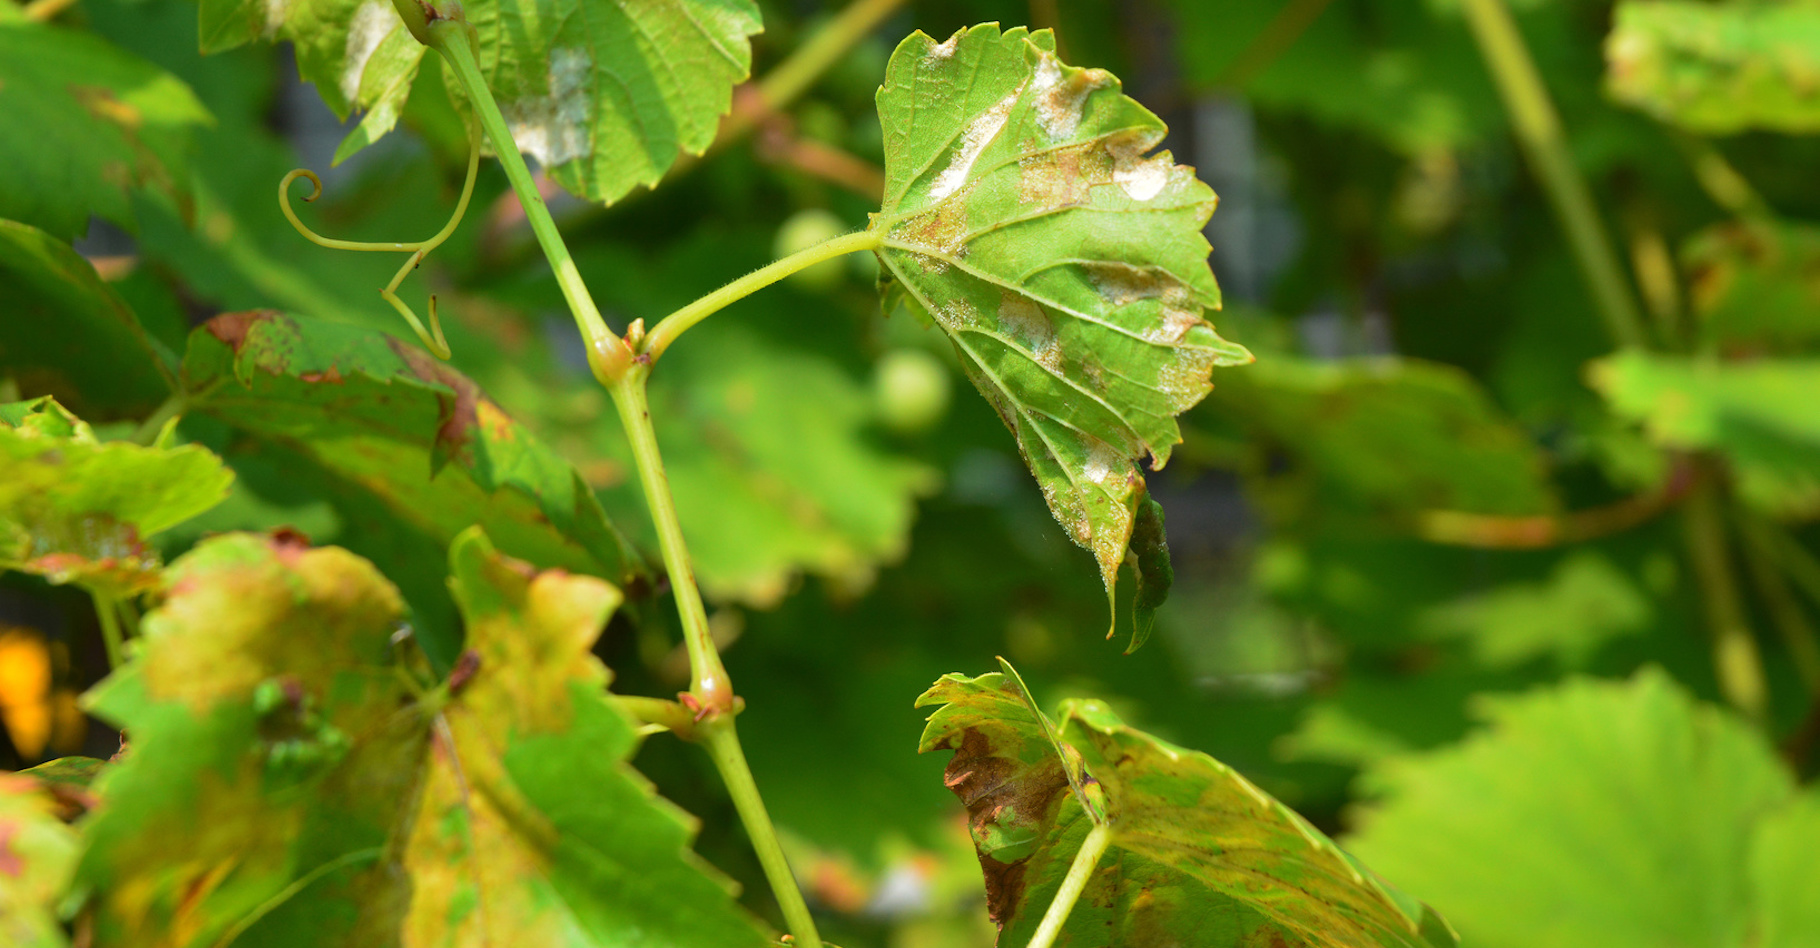 Le mildiou est une maladie qui atteint notamment la vigne. © bildlove, Fotolia